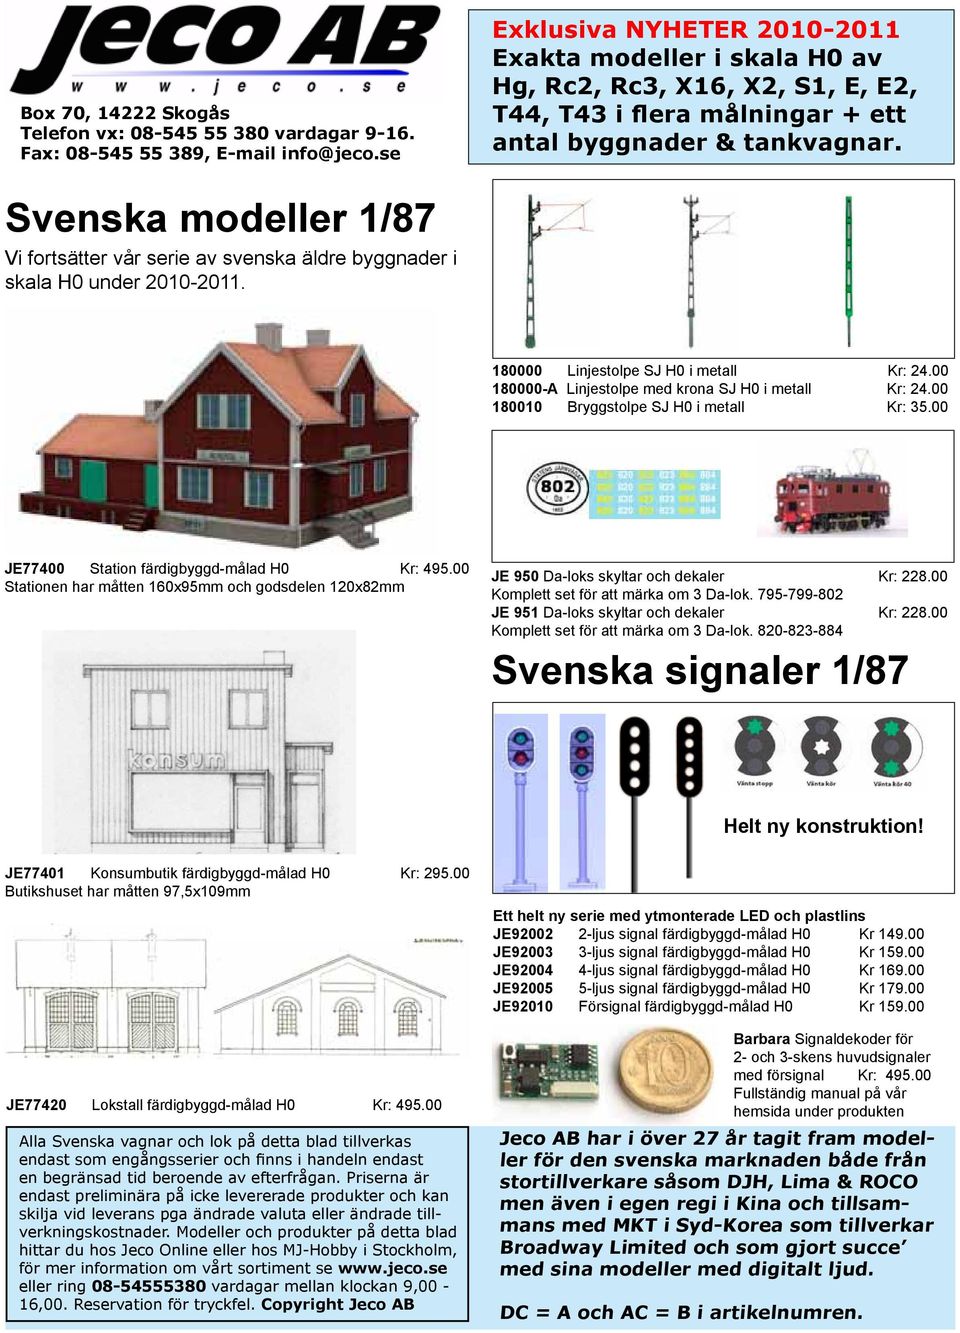 Svenska modeller 1/87 Vi fortsätter vår serie av svenska äldre byggnader i skala H0 under 2010-2011. 180000 Linjestolpe SJ H0 i metall Kr: 24.00 180000-A Linjestolpe med krona SJ H0 i metall Kr: 24.